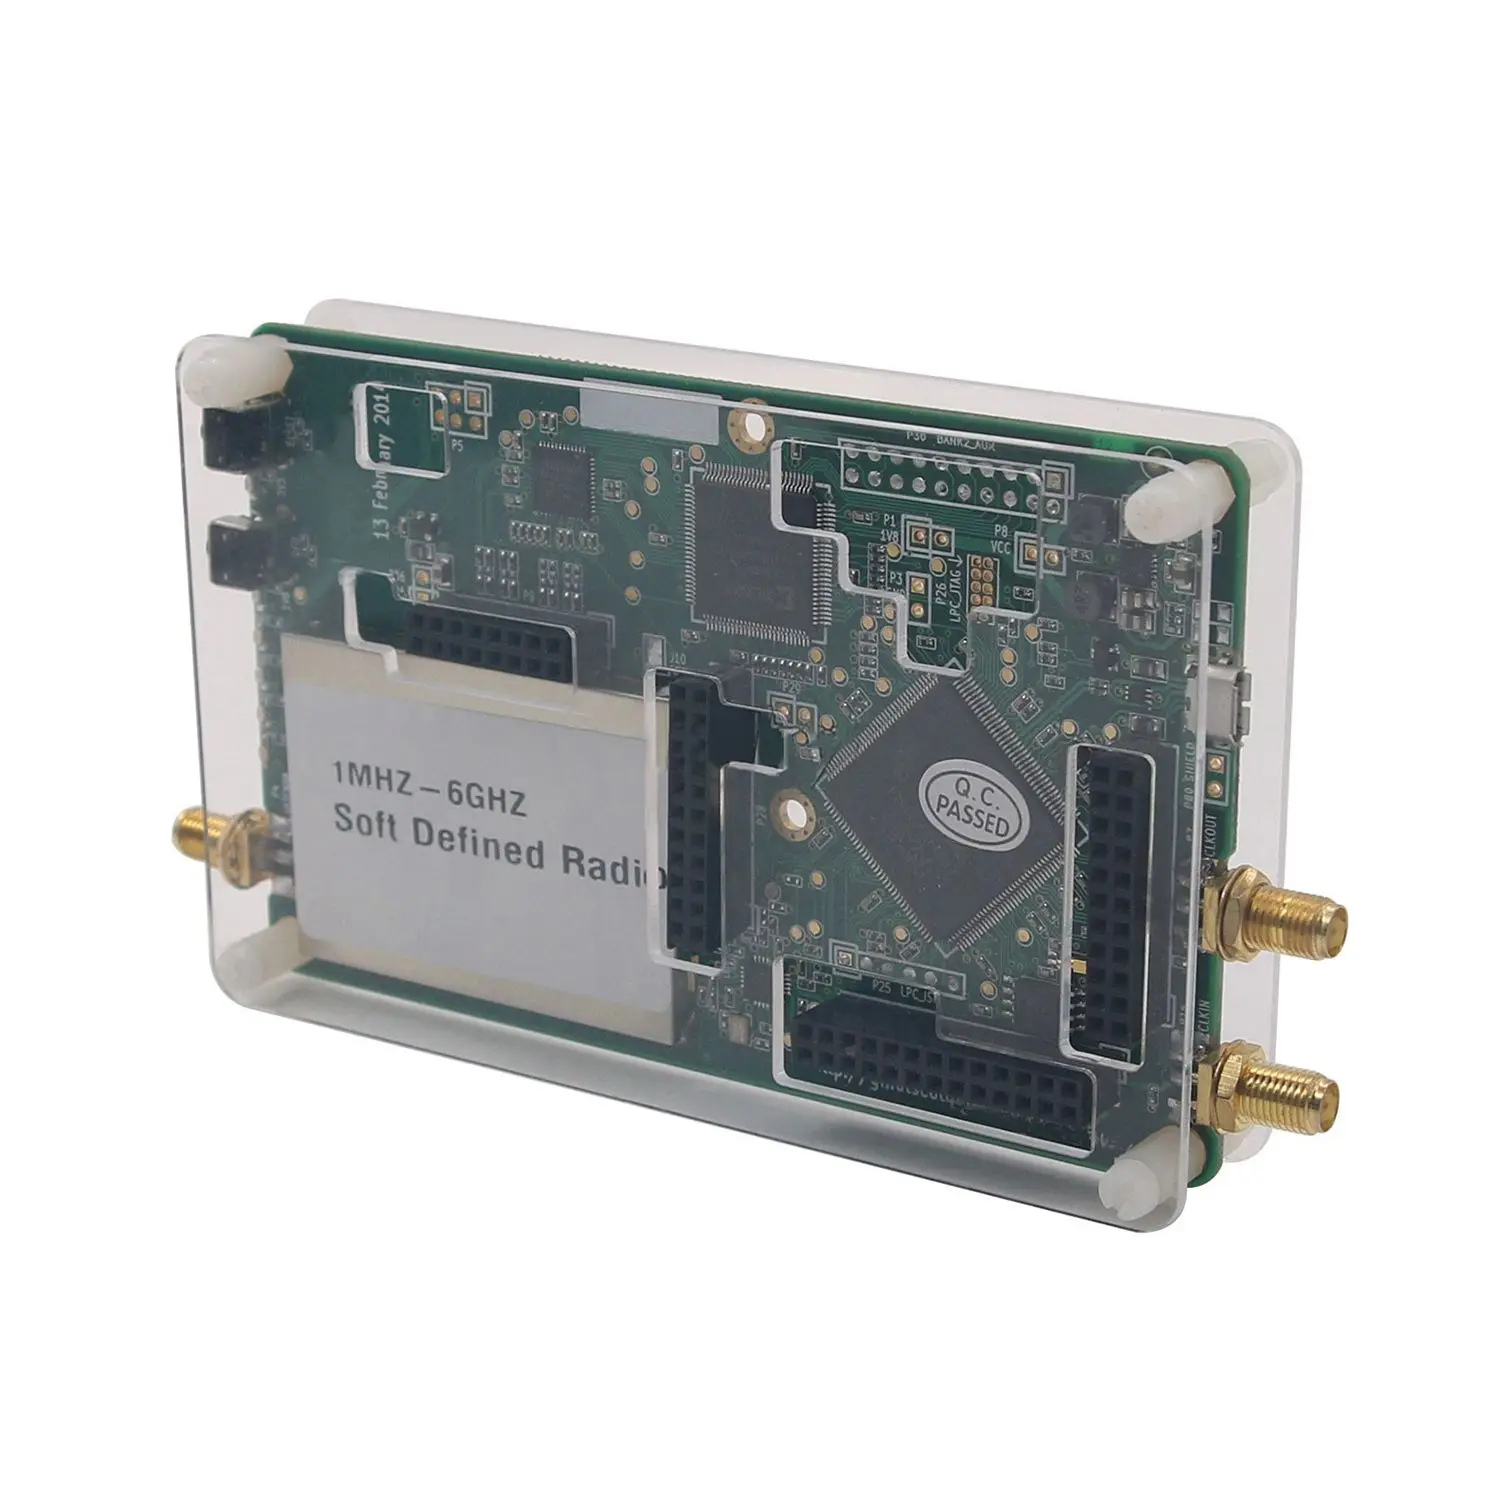 1 МГц-6 ГГц SDR платформенное программное обеспечение определенная Плата развития радио